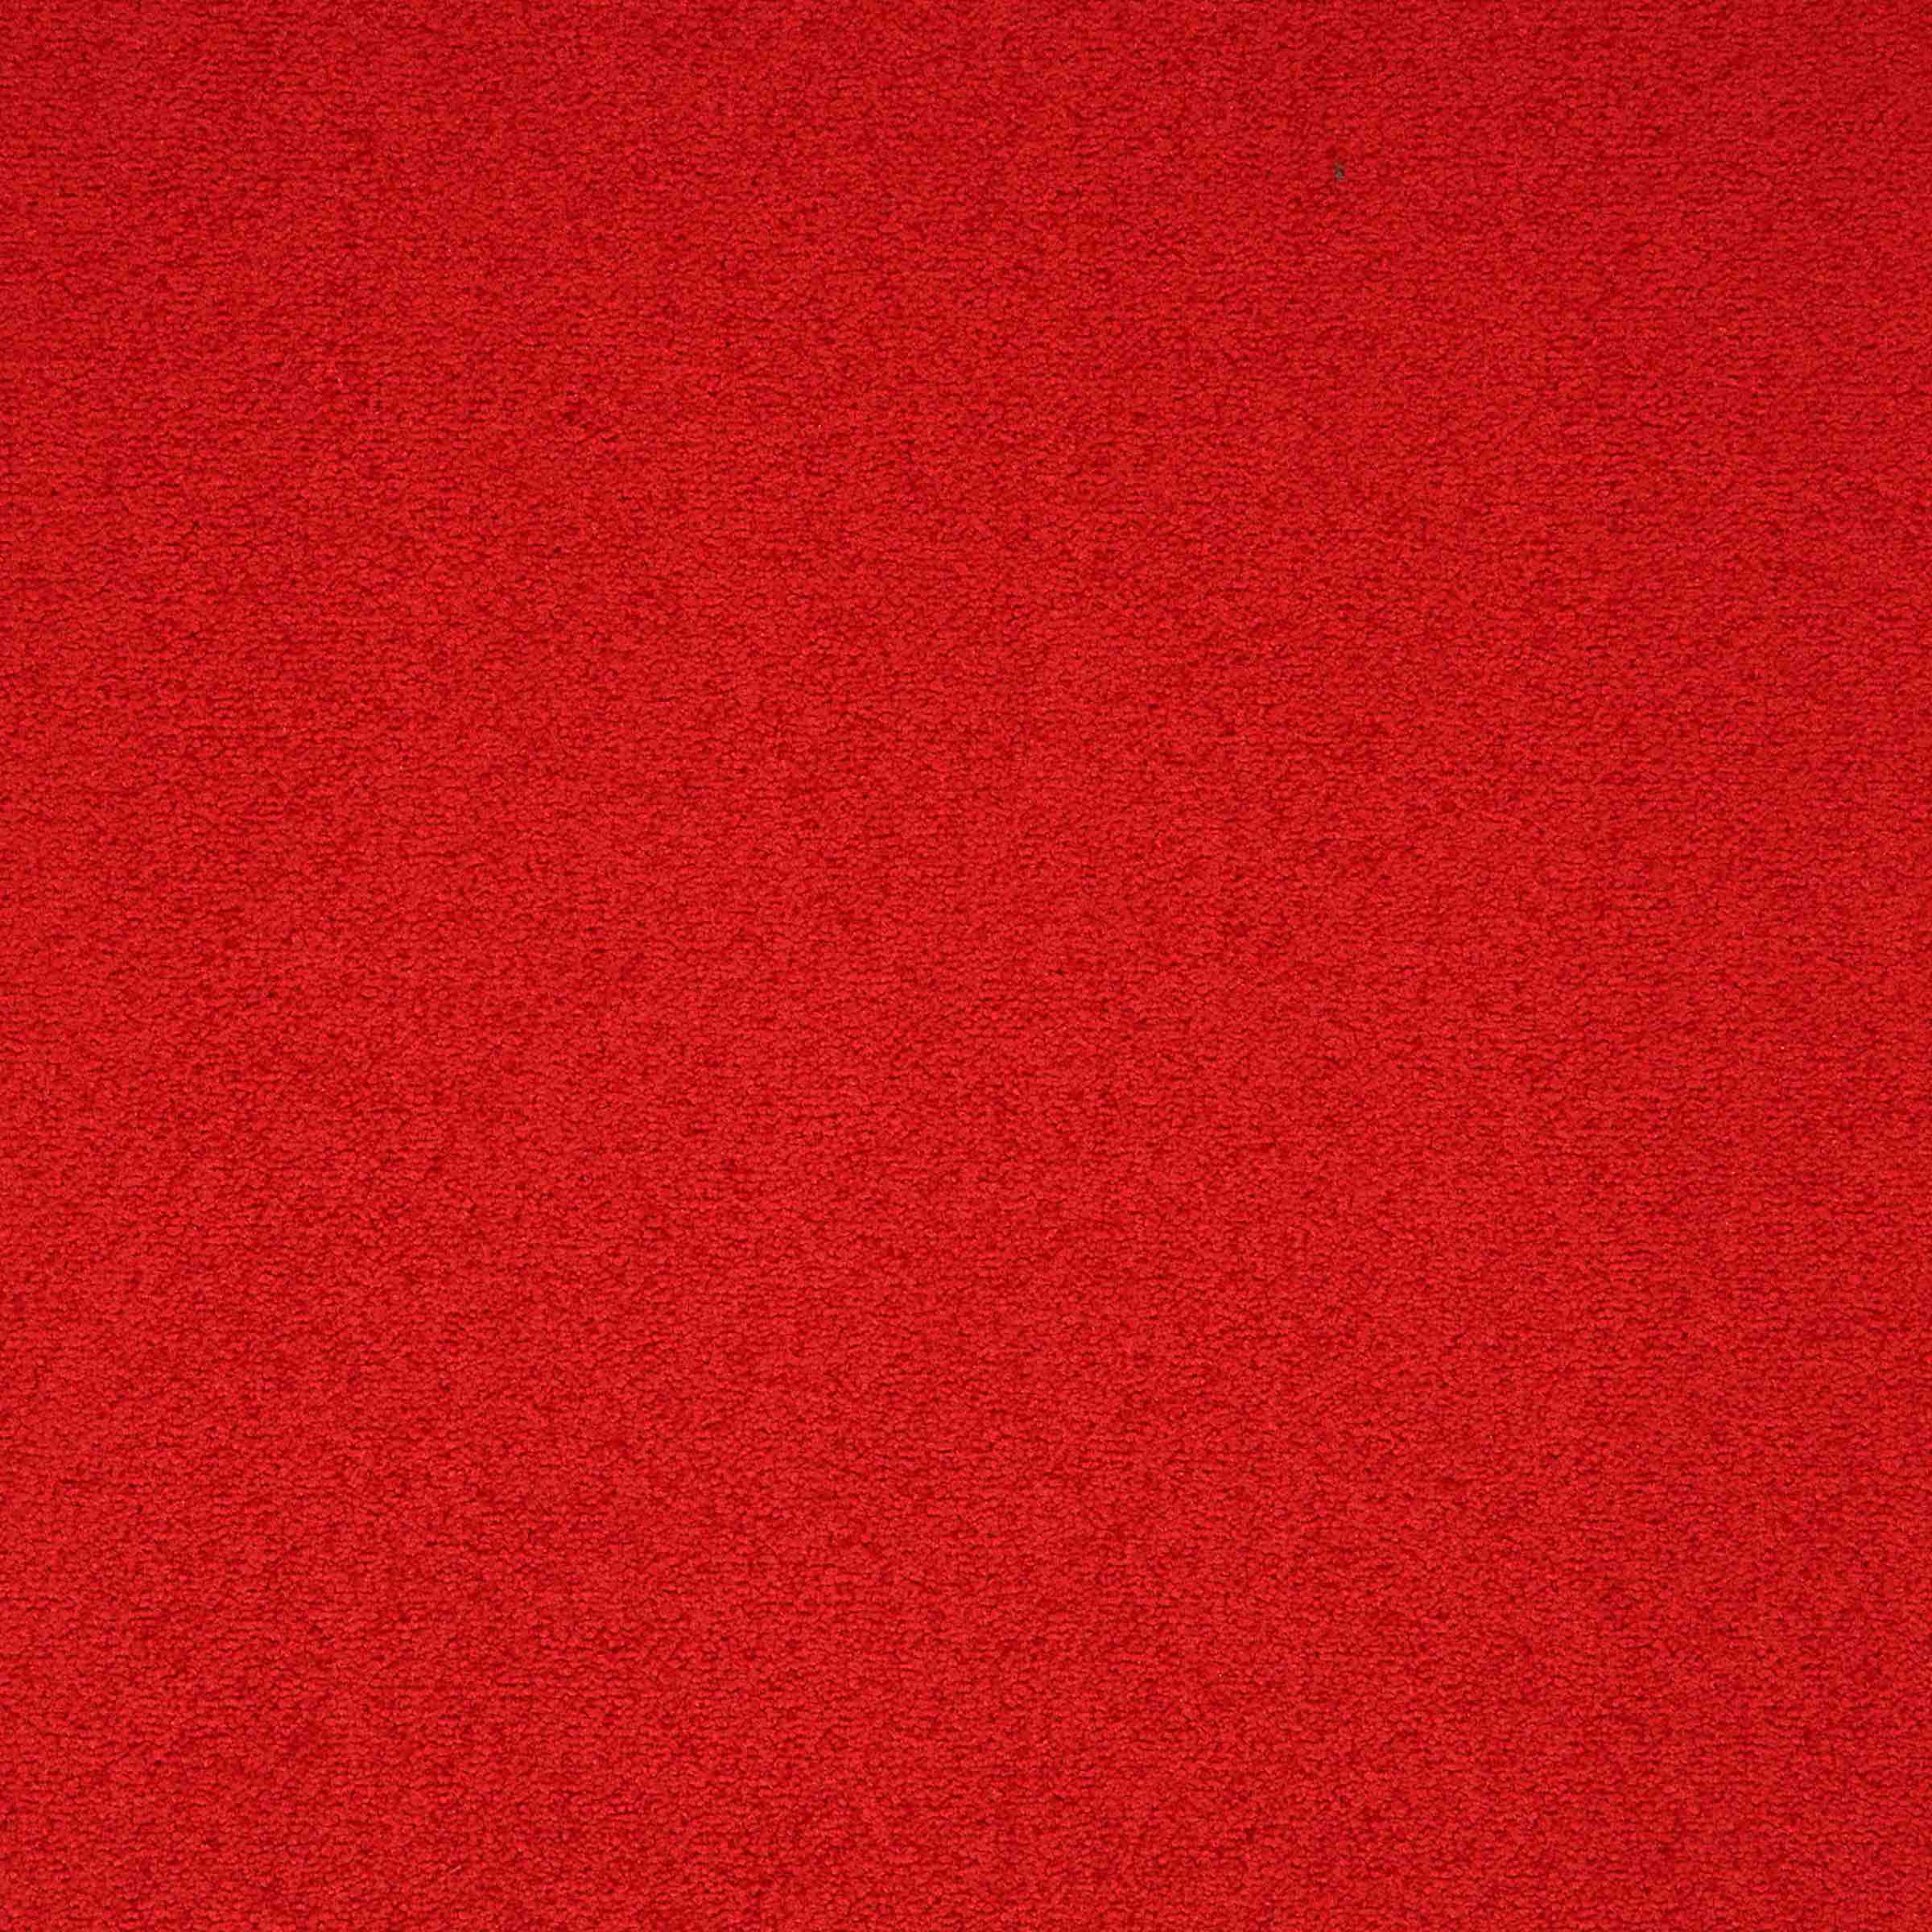 Maestro | Red, 501 | Paragon Carpet Tiles | Commercial Carpet Tiles